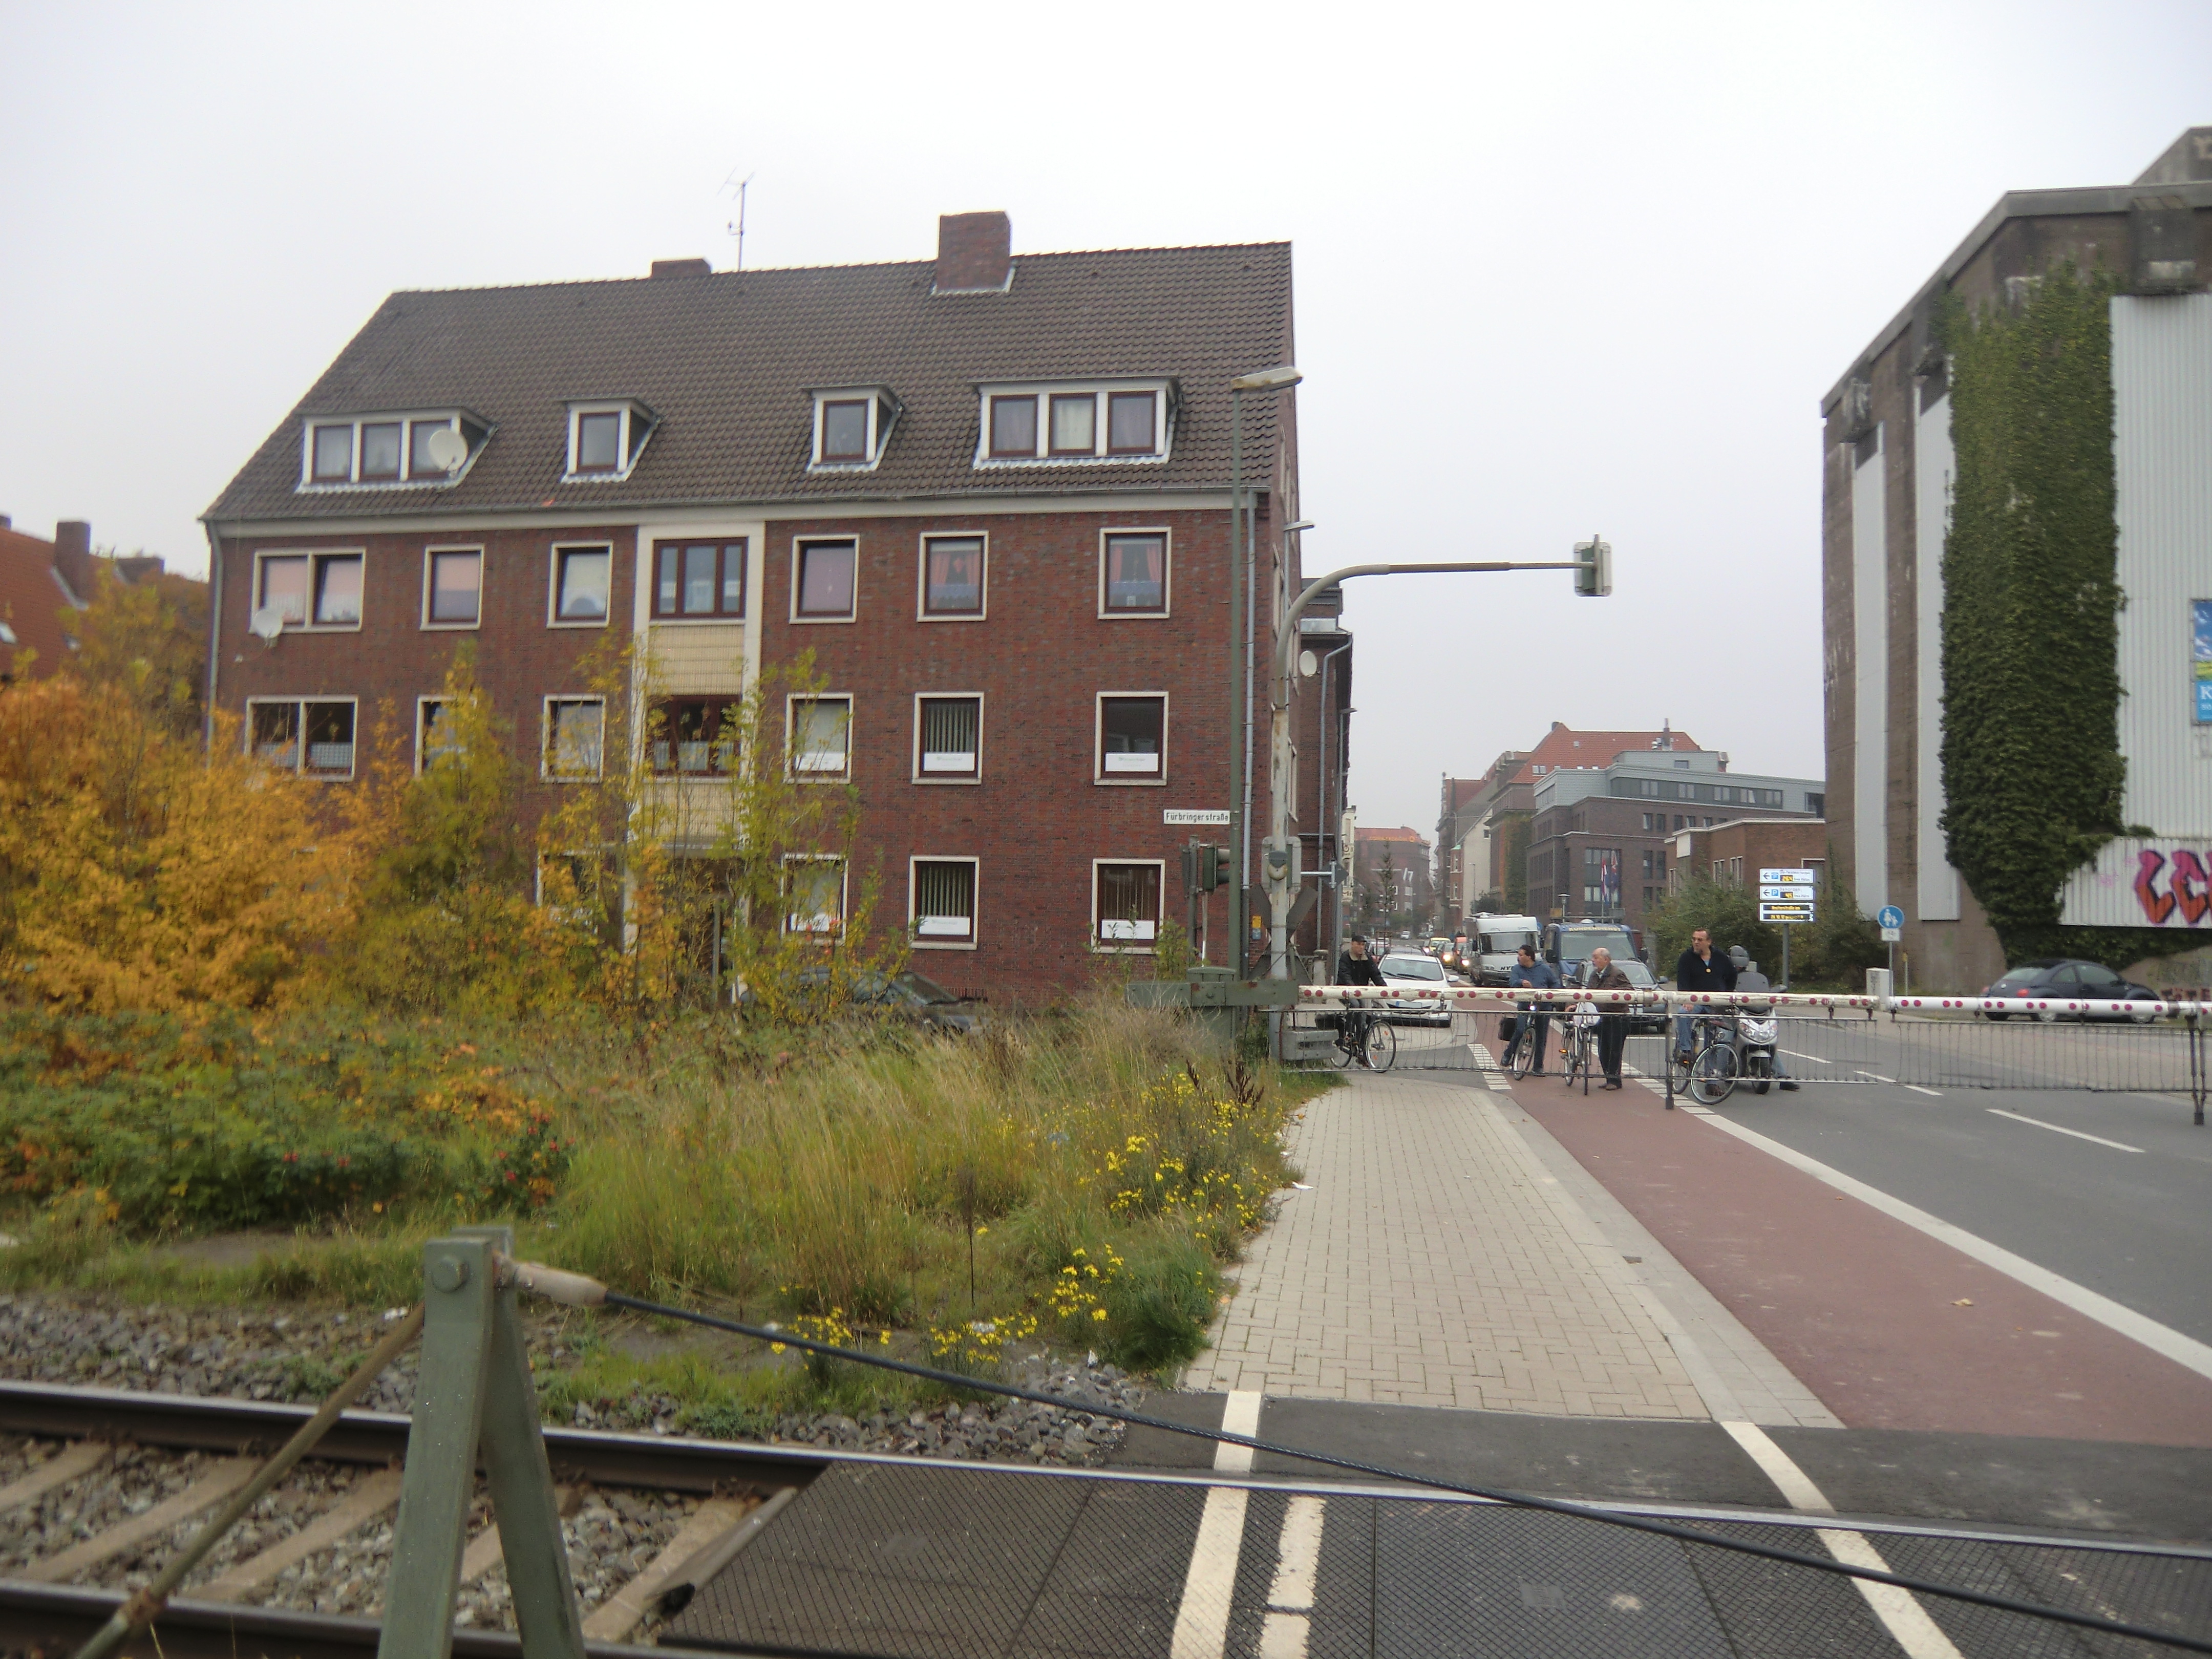 Farbfoto: Die eingleisige Eisenbahnstrecke Leer-Emden durchquert die Nesserlander Straße in Emden. Im Oktober des Jahres 2010. Foto: Erwin Thomasius